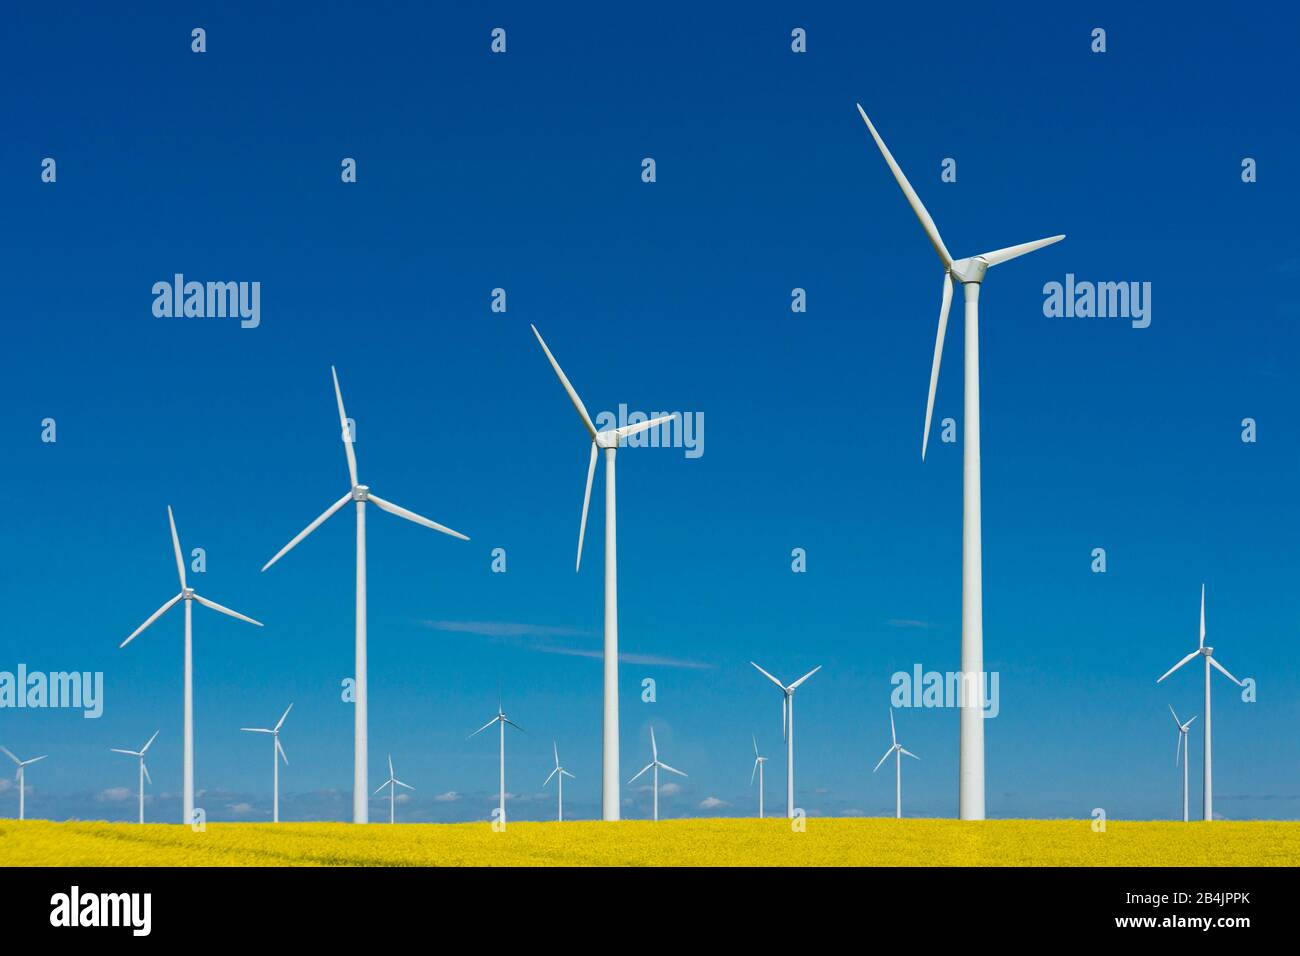 Windräder vor blauem Himmel, Symbolbild Windkraft, erneuerbare Energie Stock Photo